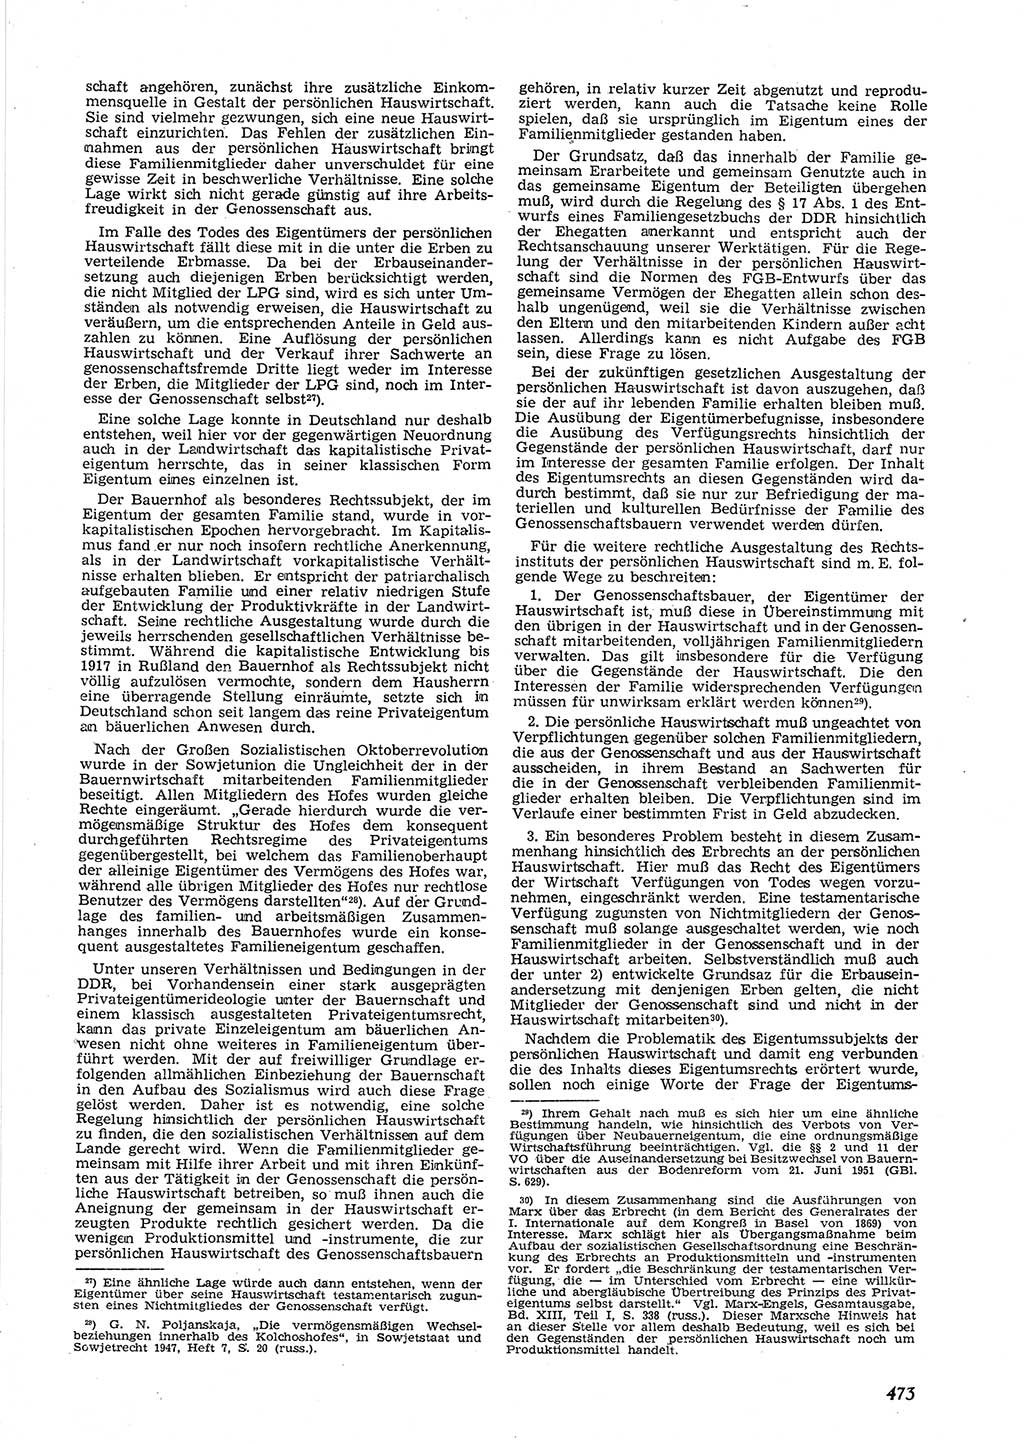 Neue Justiz (NJ), Zeitschrift für Recht und Rechtswissenschaft [Deutsche Demokratische Republik (DDR)], 9. Jahrgang 1955, Seite 473 (NJ DDR 1955, S. 473)